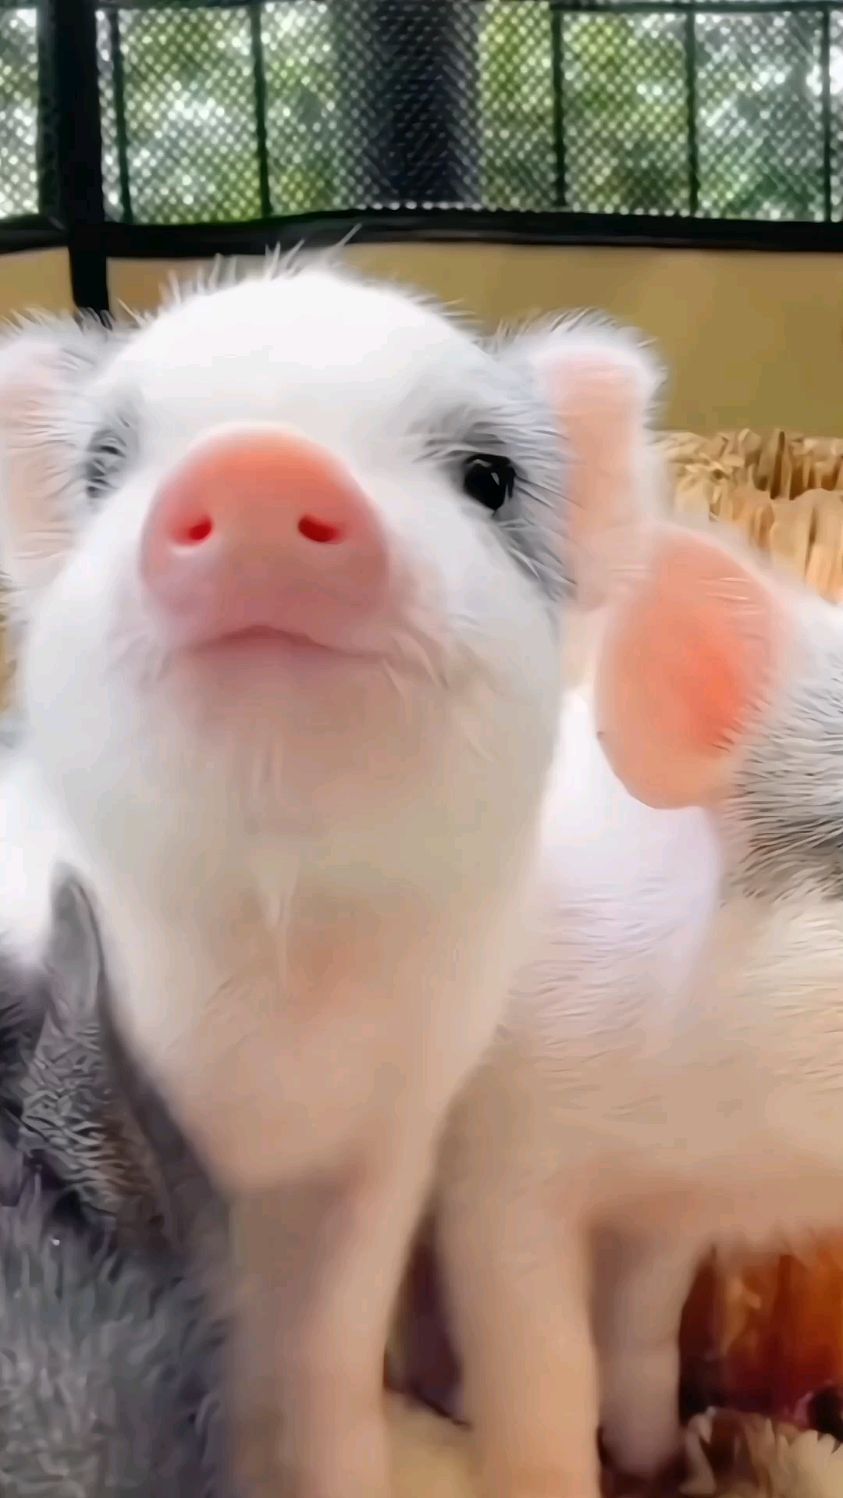 小猪猪可爱到萌翻了